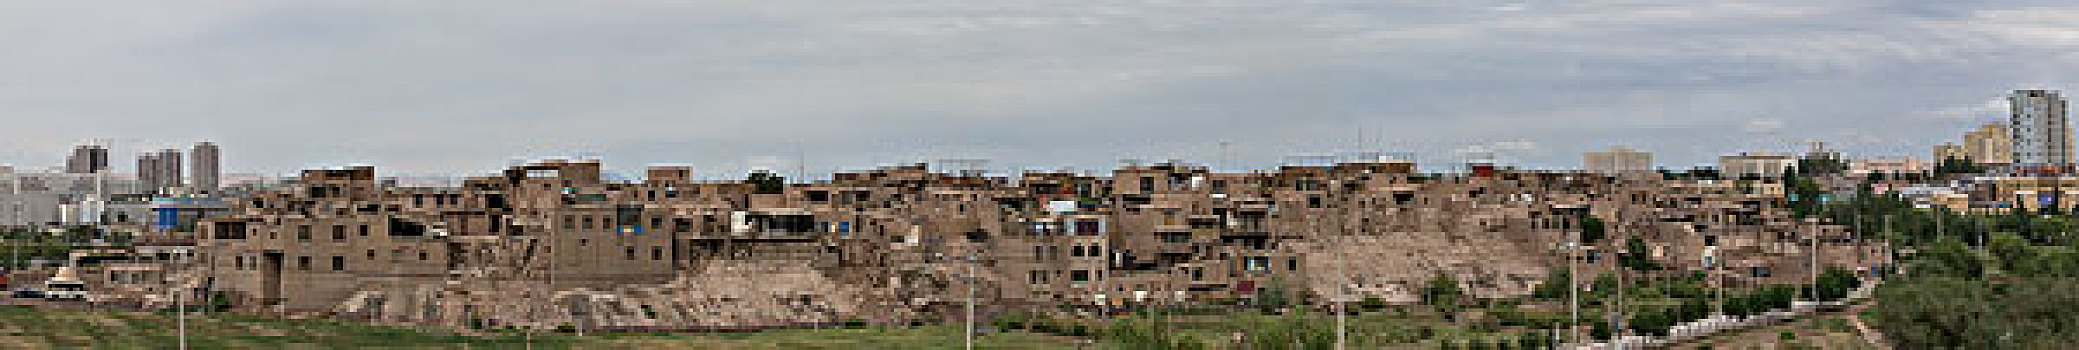 新疆喀什高台民居全景